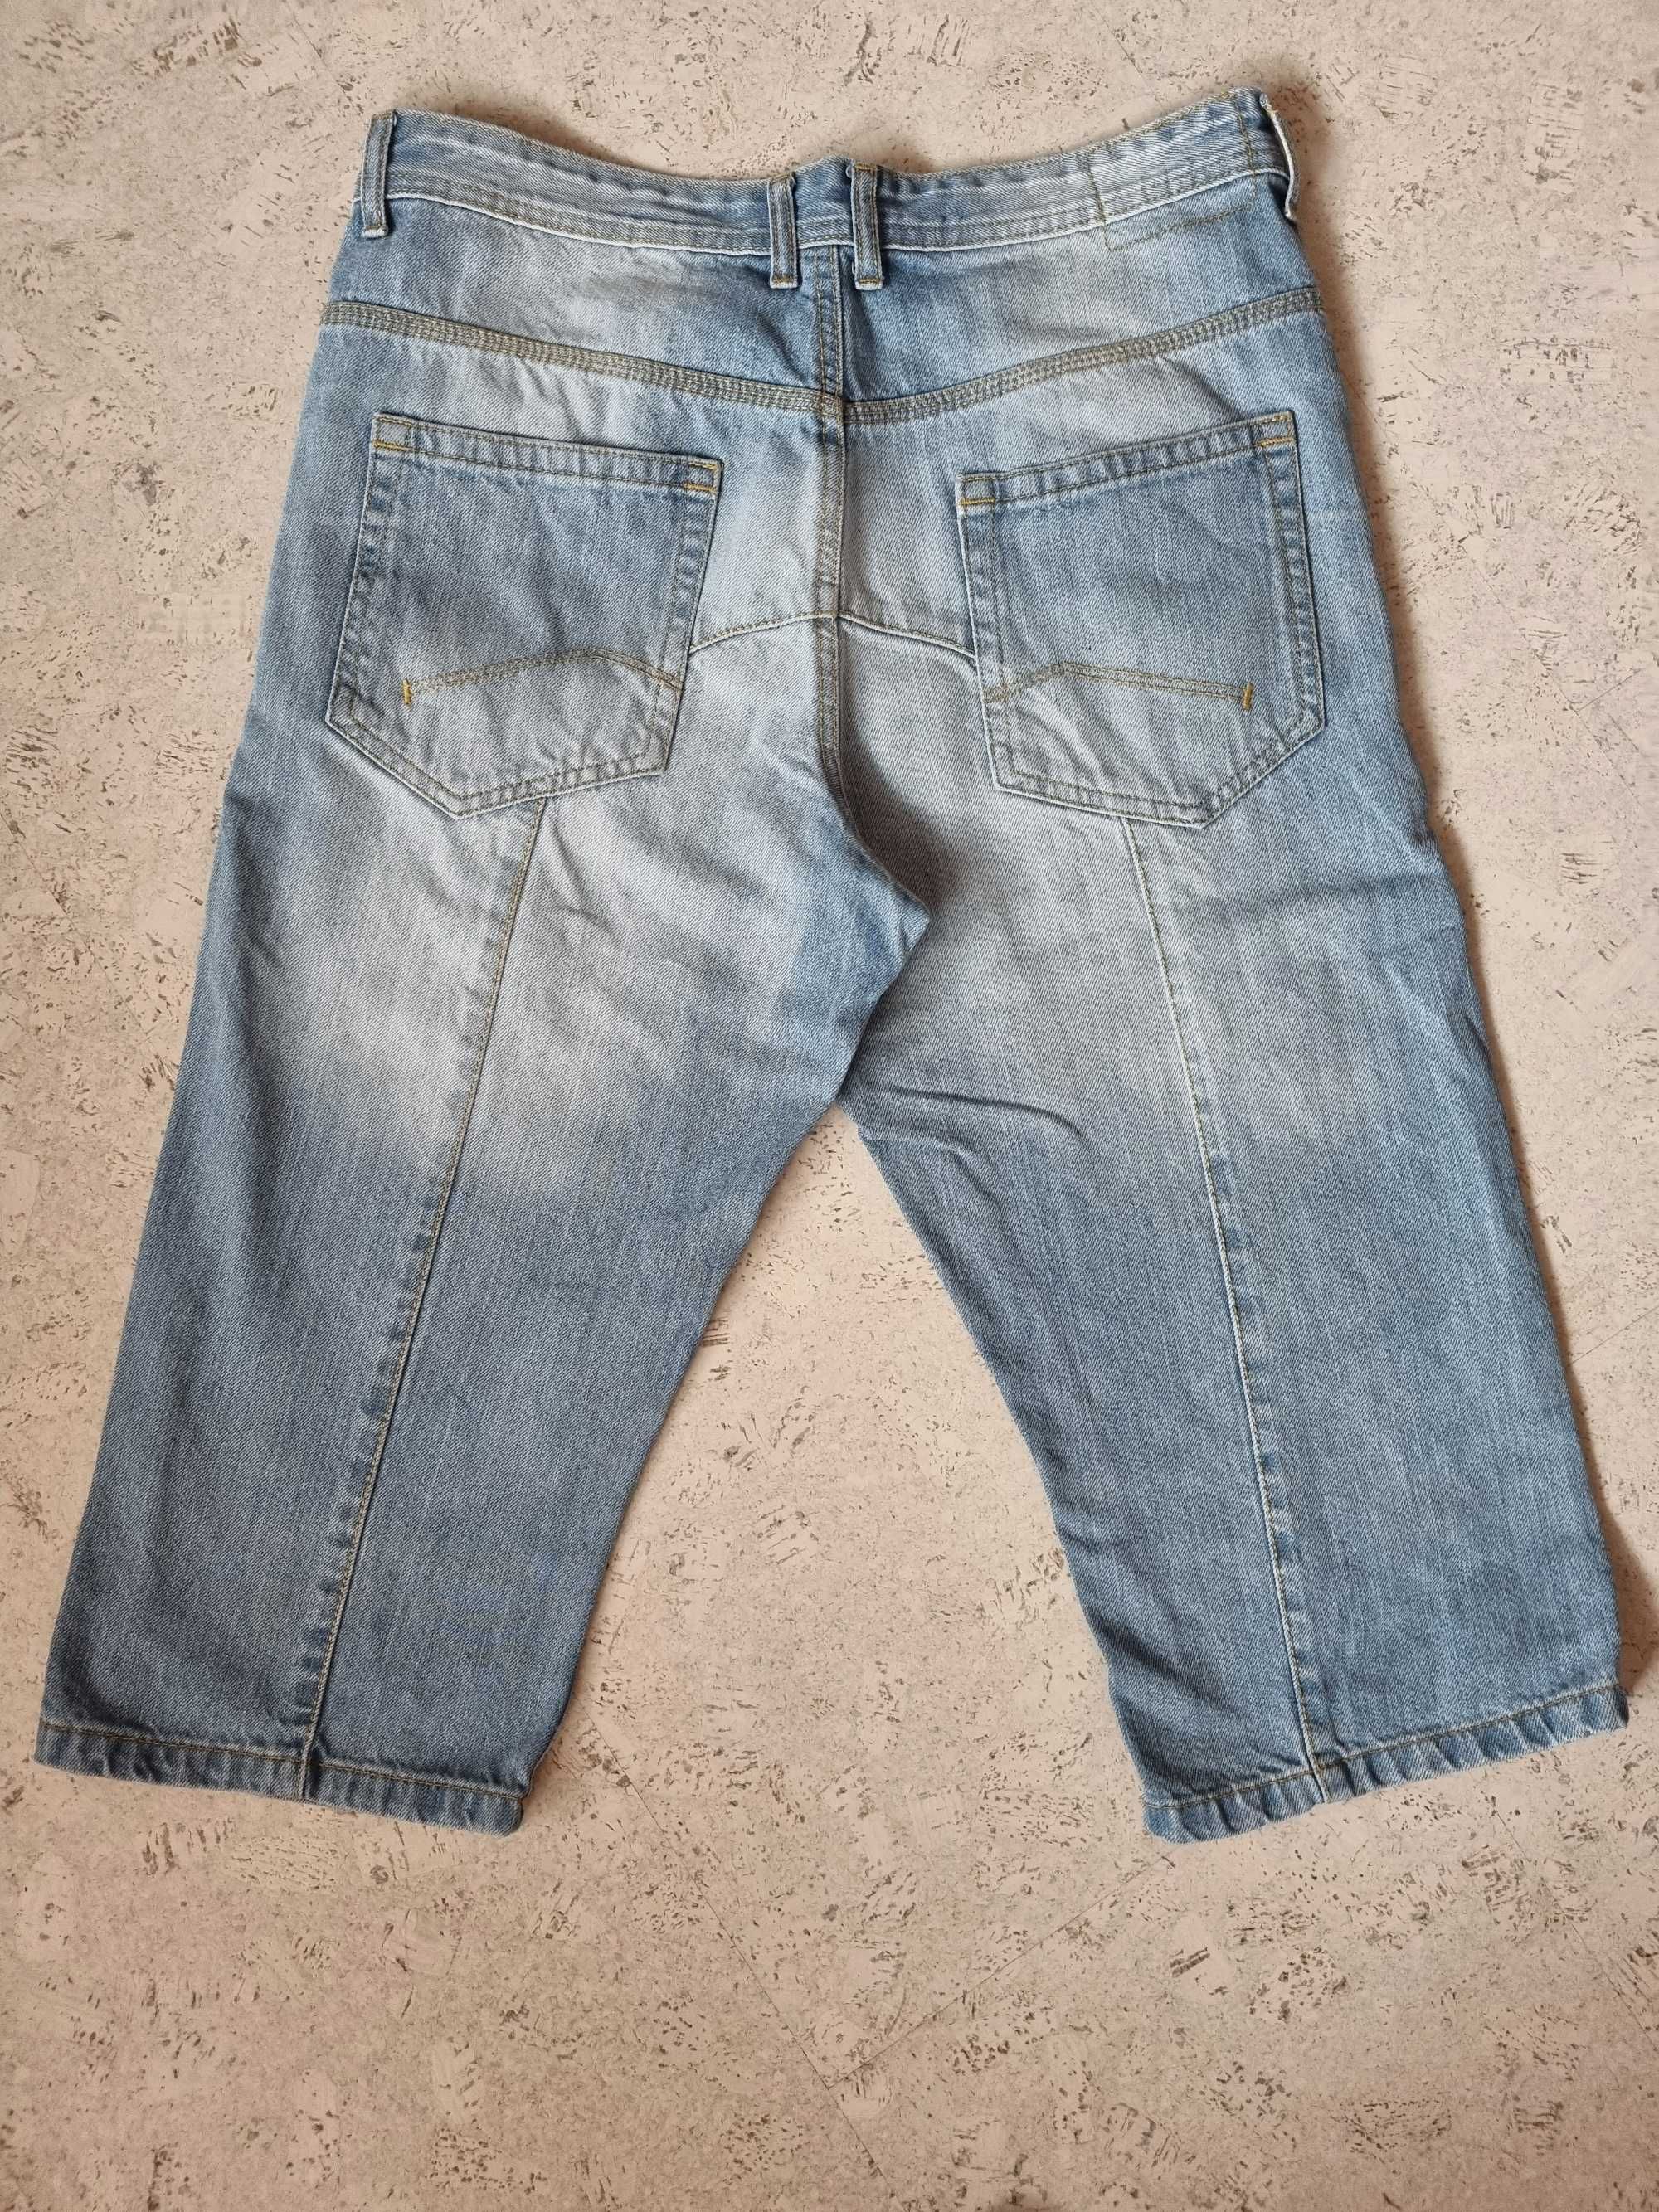 Хлопковые джинсовые шорты ф-мы F&F р.32, М, состояние идеальное